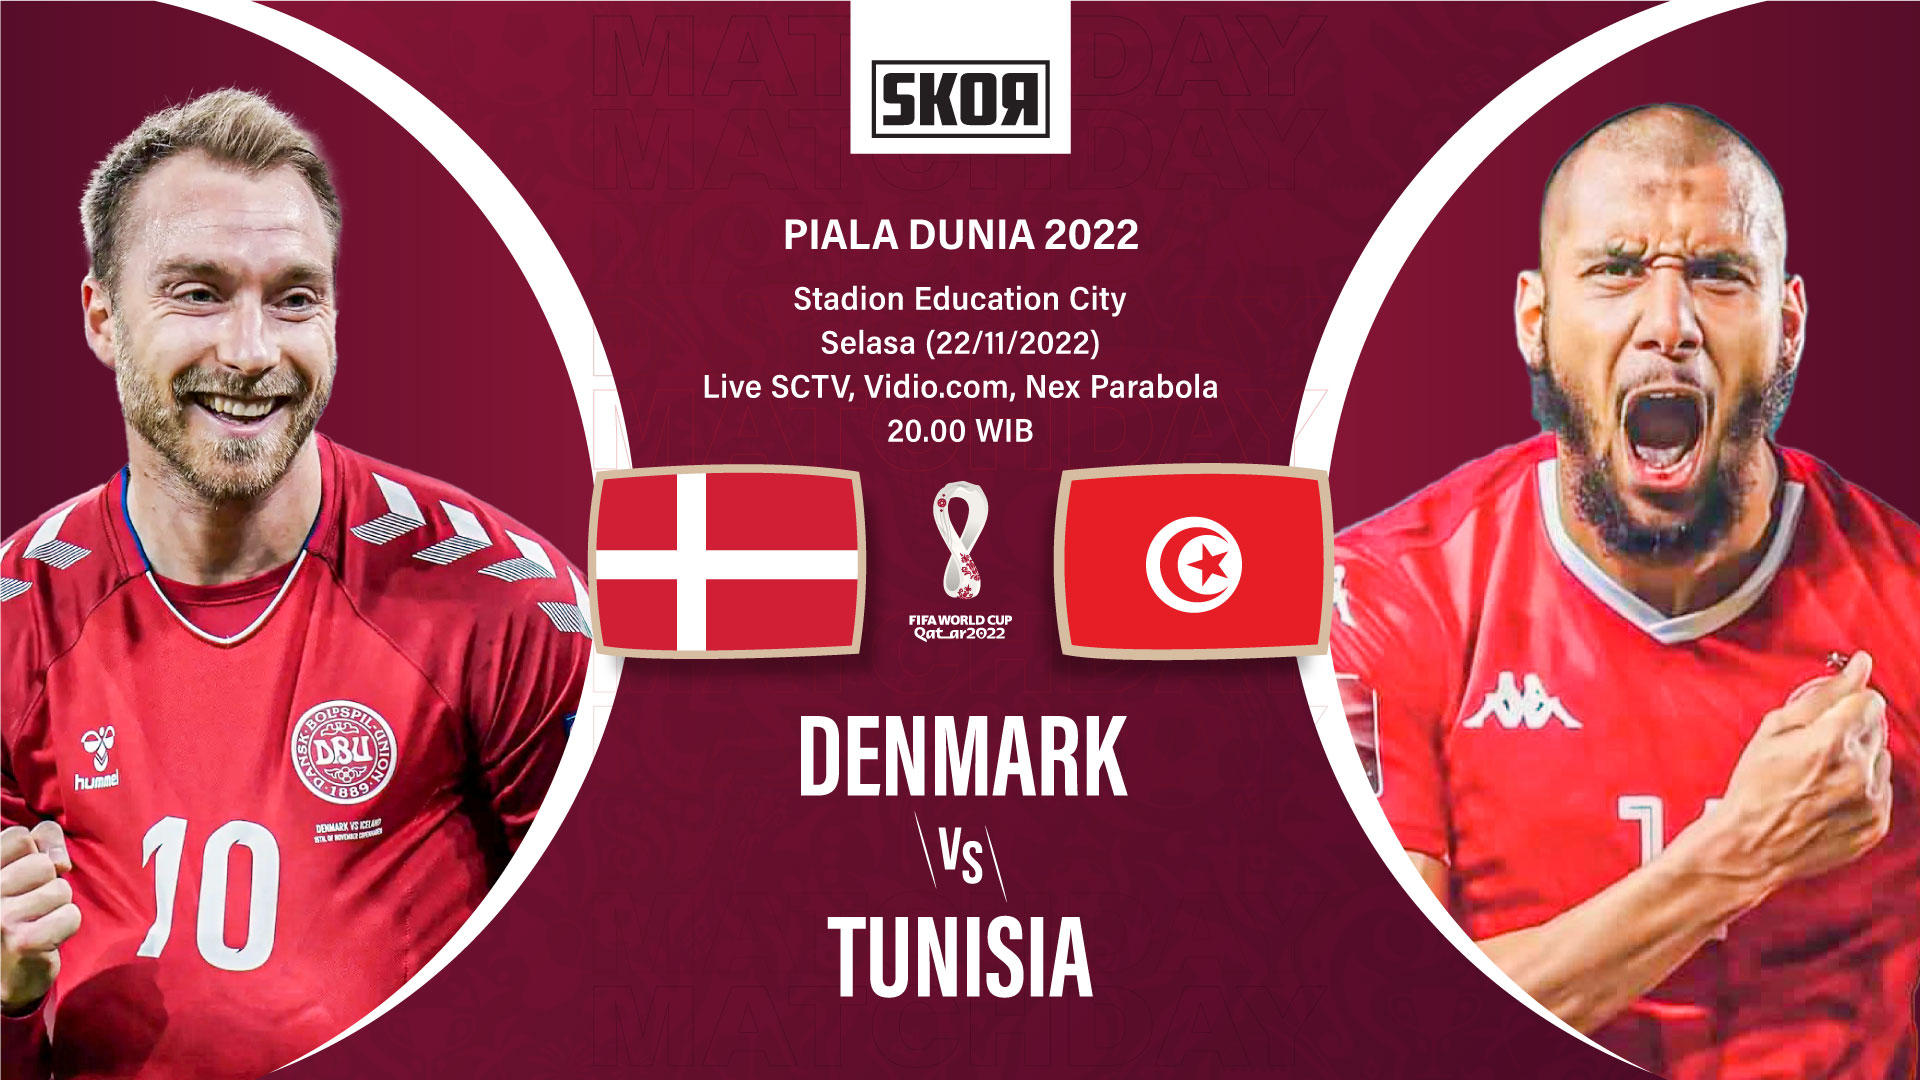 Piala Dunia 2022: Head to Head Denmark vs Tunisia